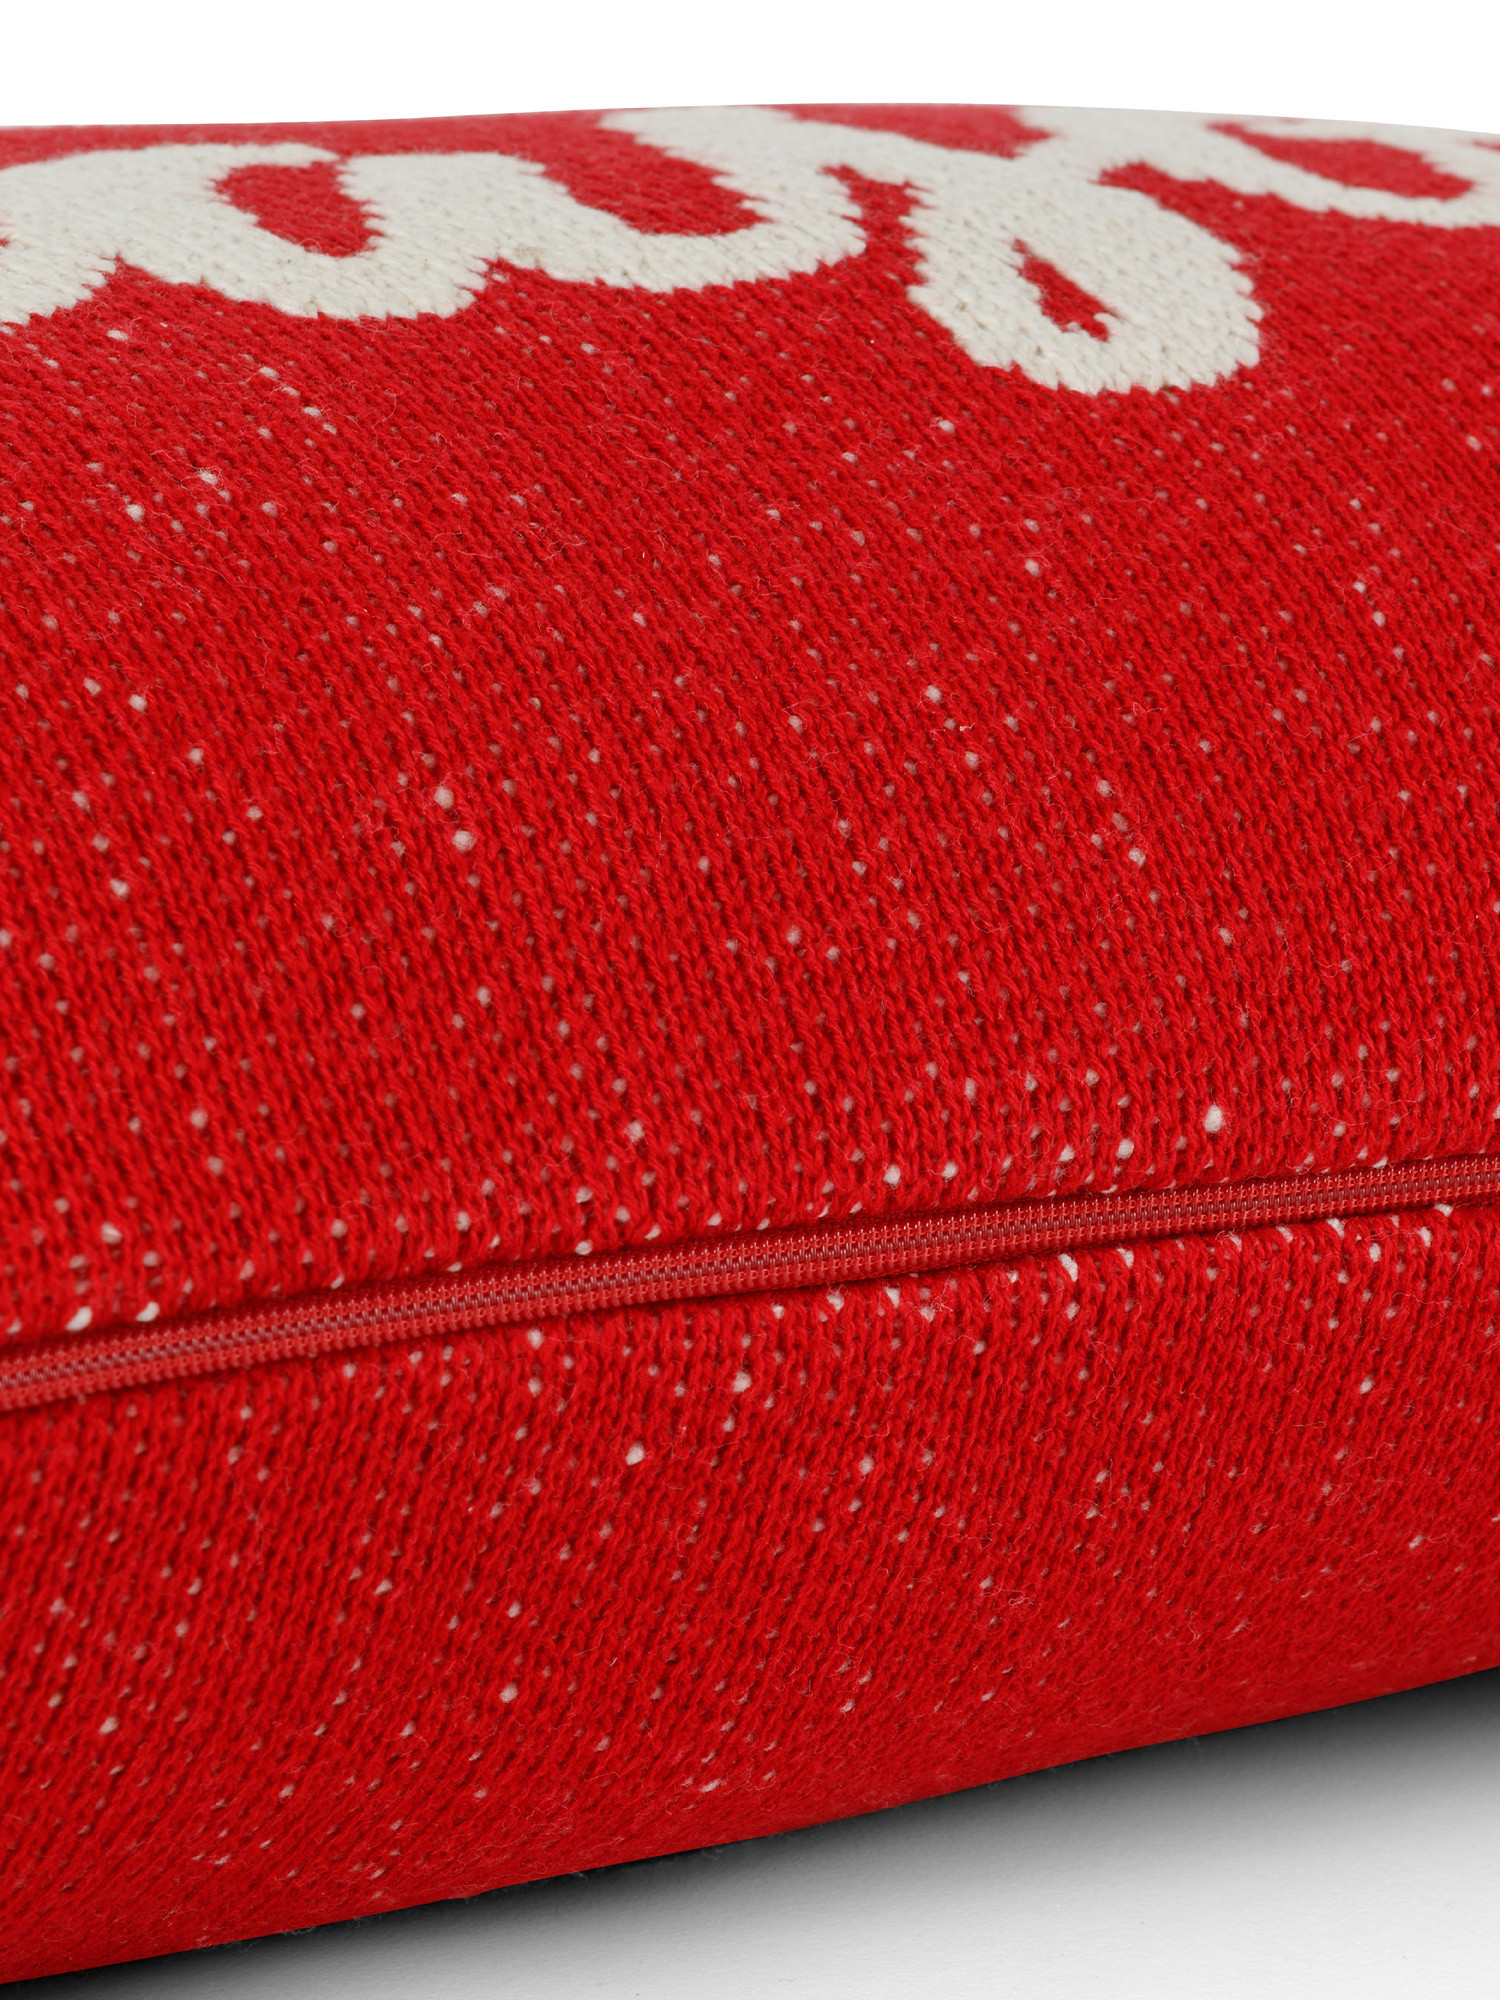 Cuscino maglia di cotone 40x60cm, Rosso, large image number 1